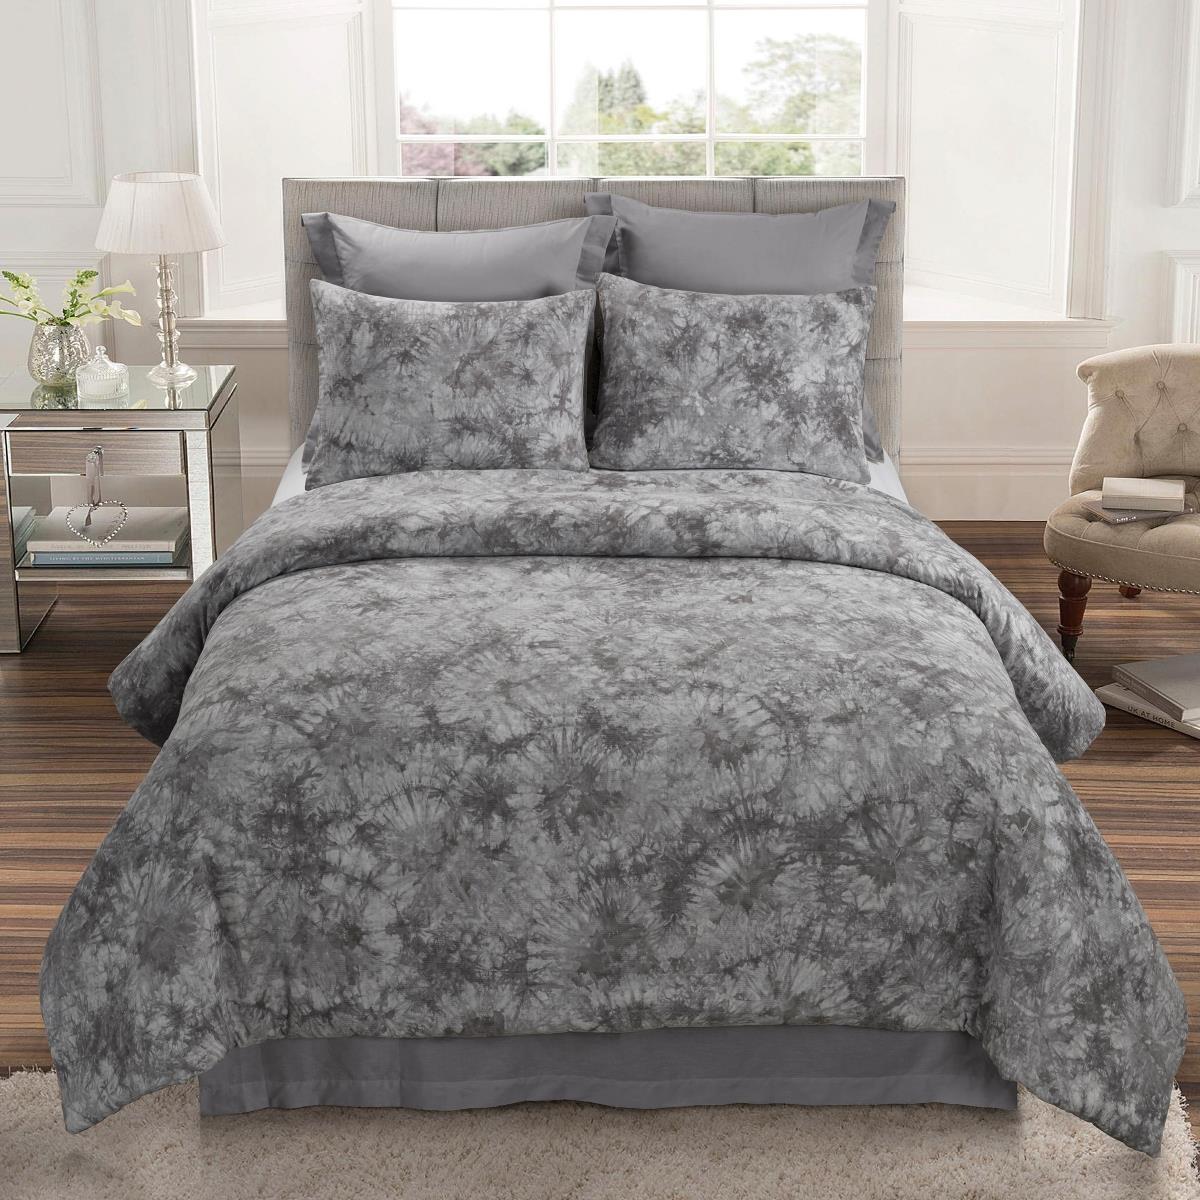 Y00413 King Size Comforter Set - Granada Grey